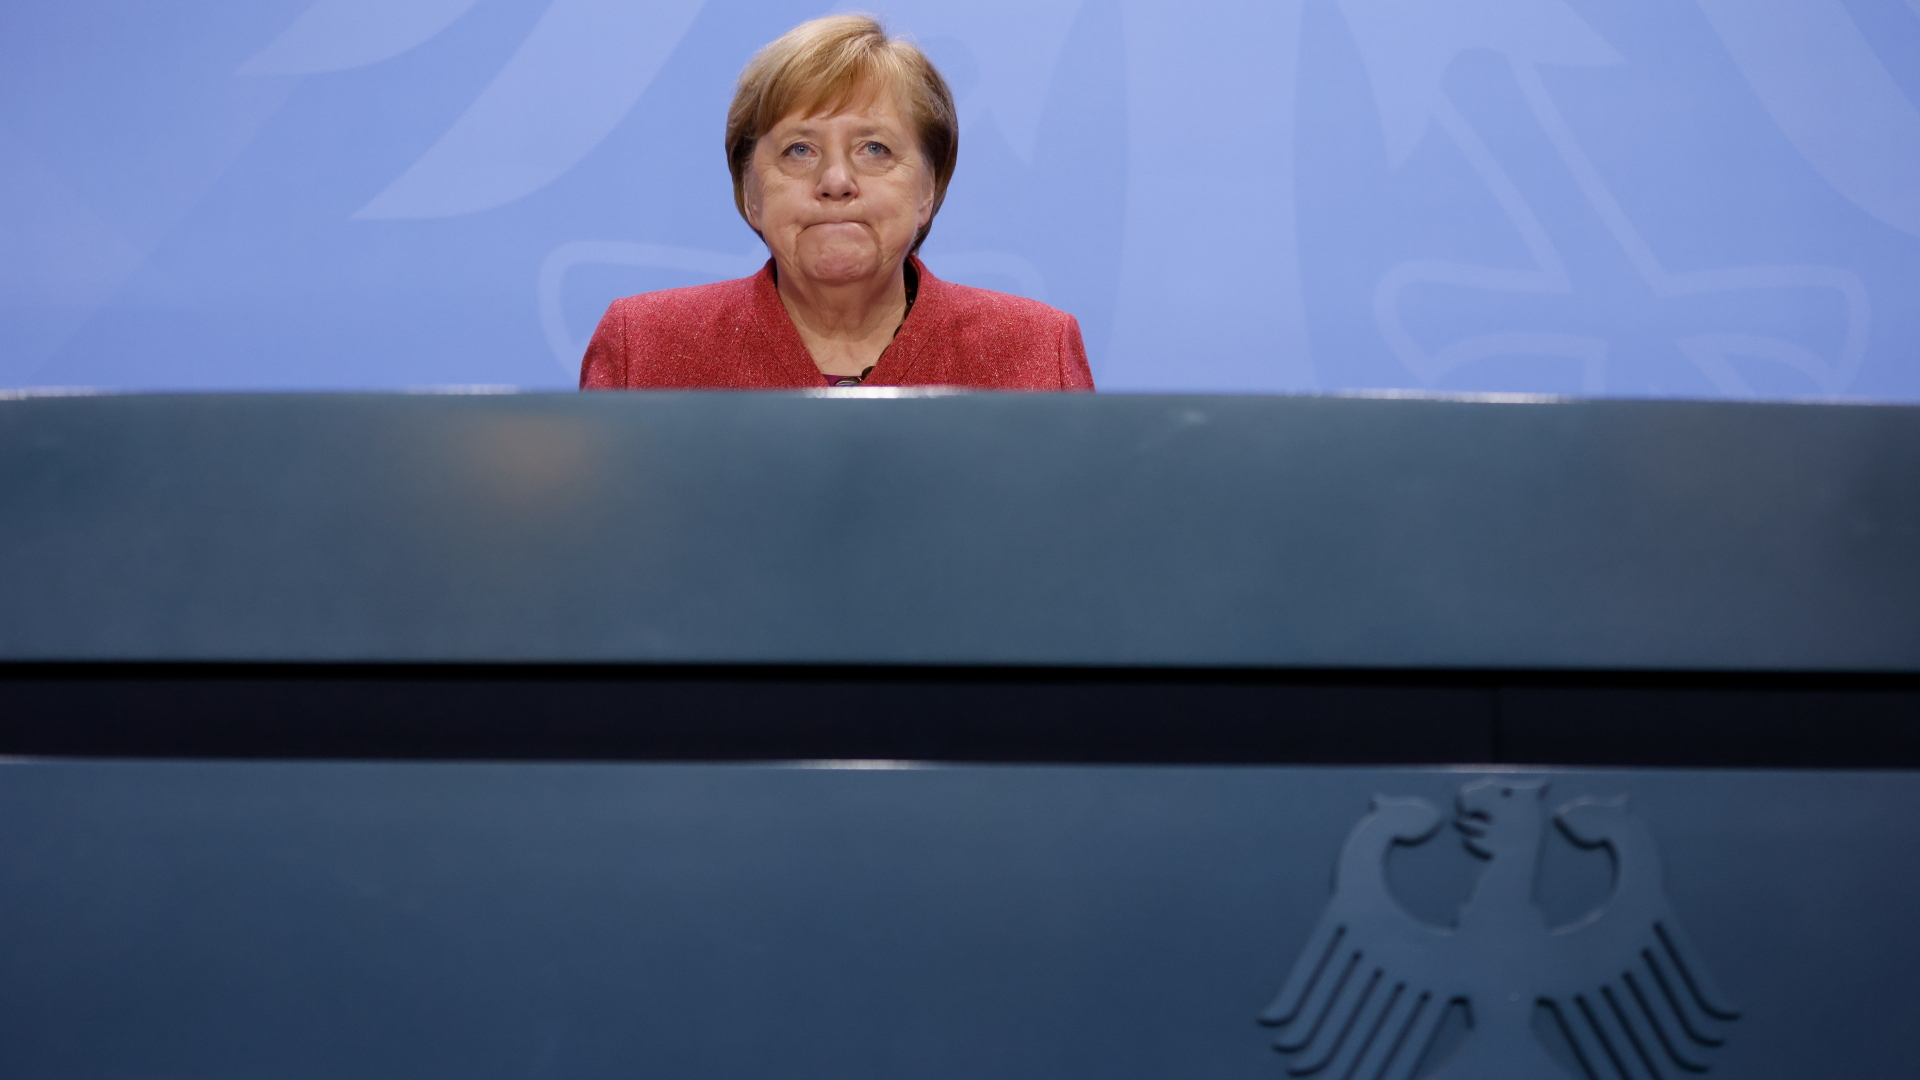 Bundeskanzlerin Angela Merkel (CDU) erläutert auf einer Pressekonferenz im Bundeskanzleramt die Ergebnisse ihres vorangegangenen Gesprächs.